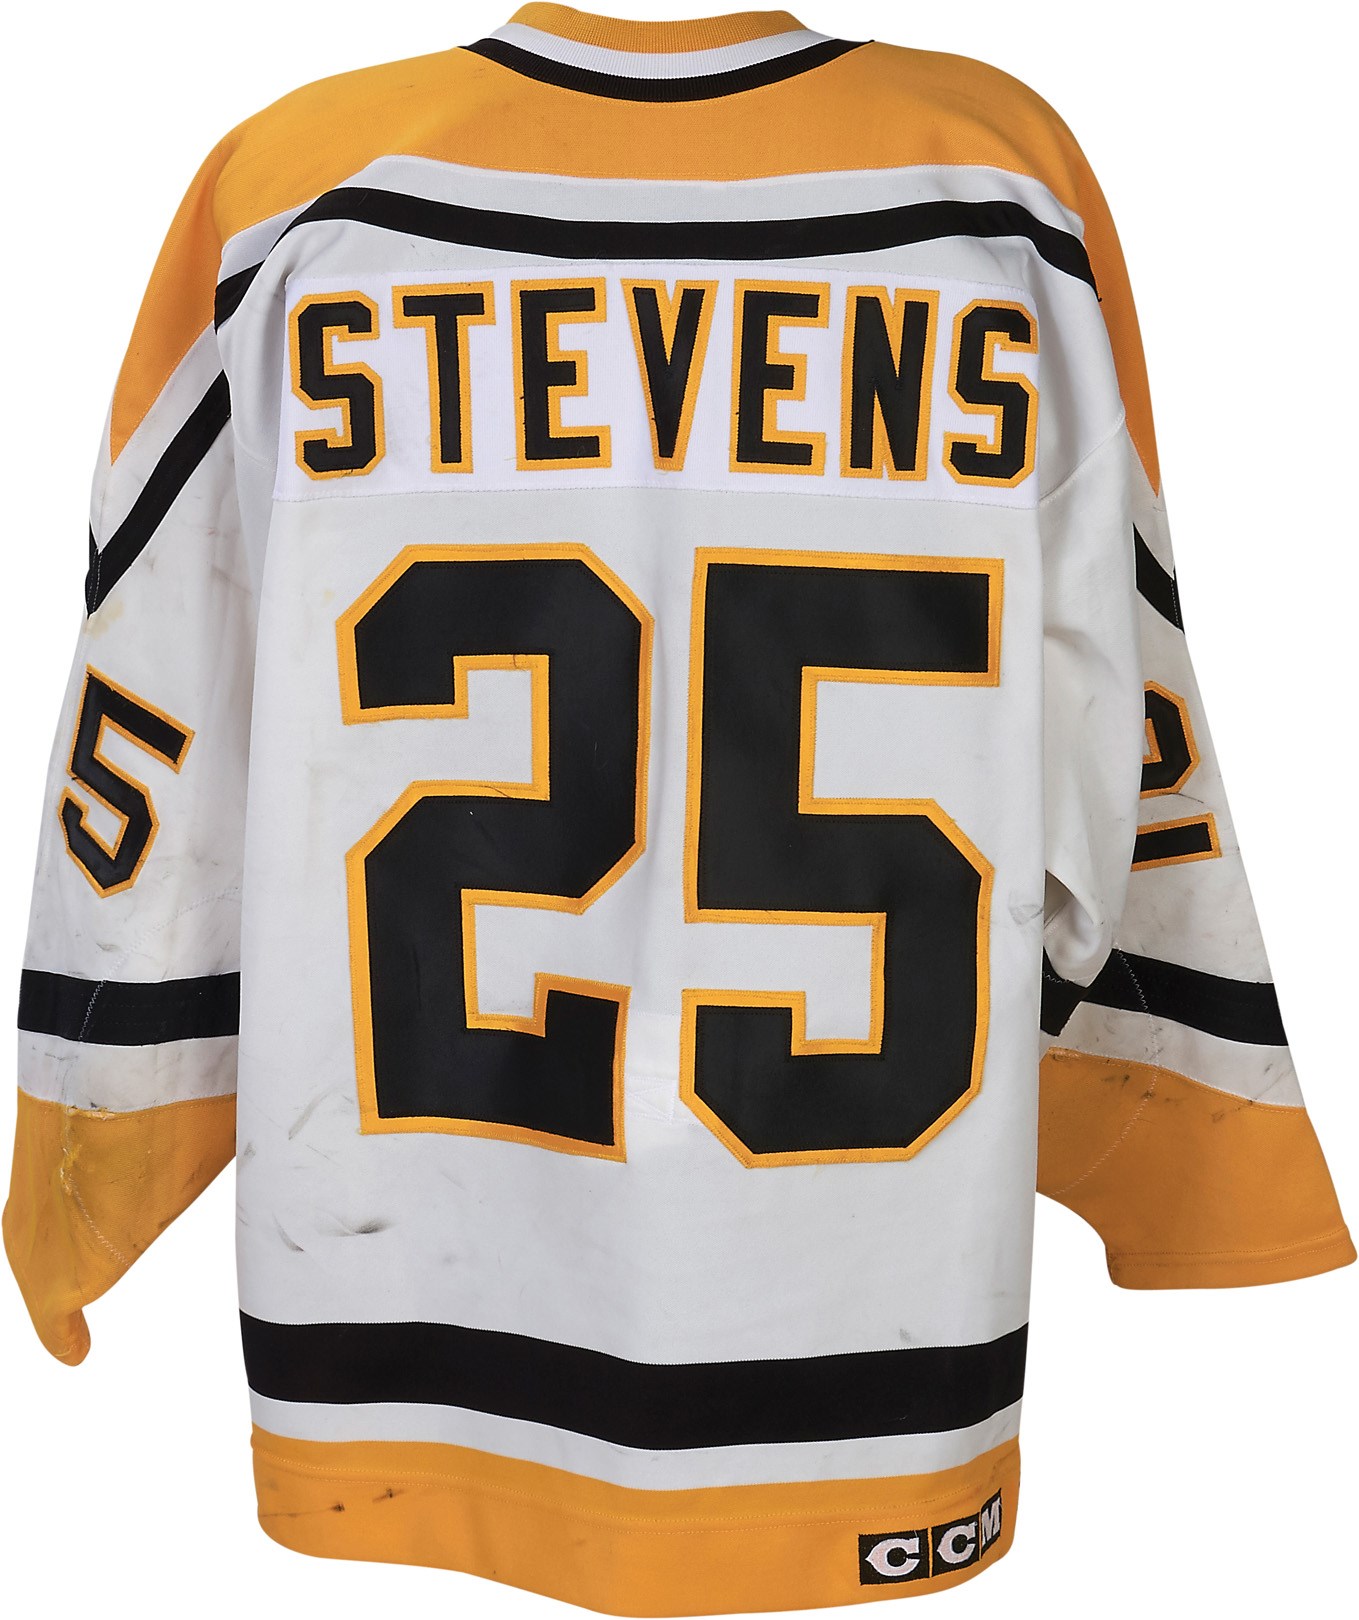 1993-94 Kevin Stevens Pittaburgh Penguins Game Worn Jersey